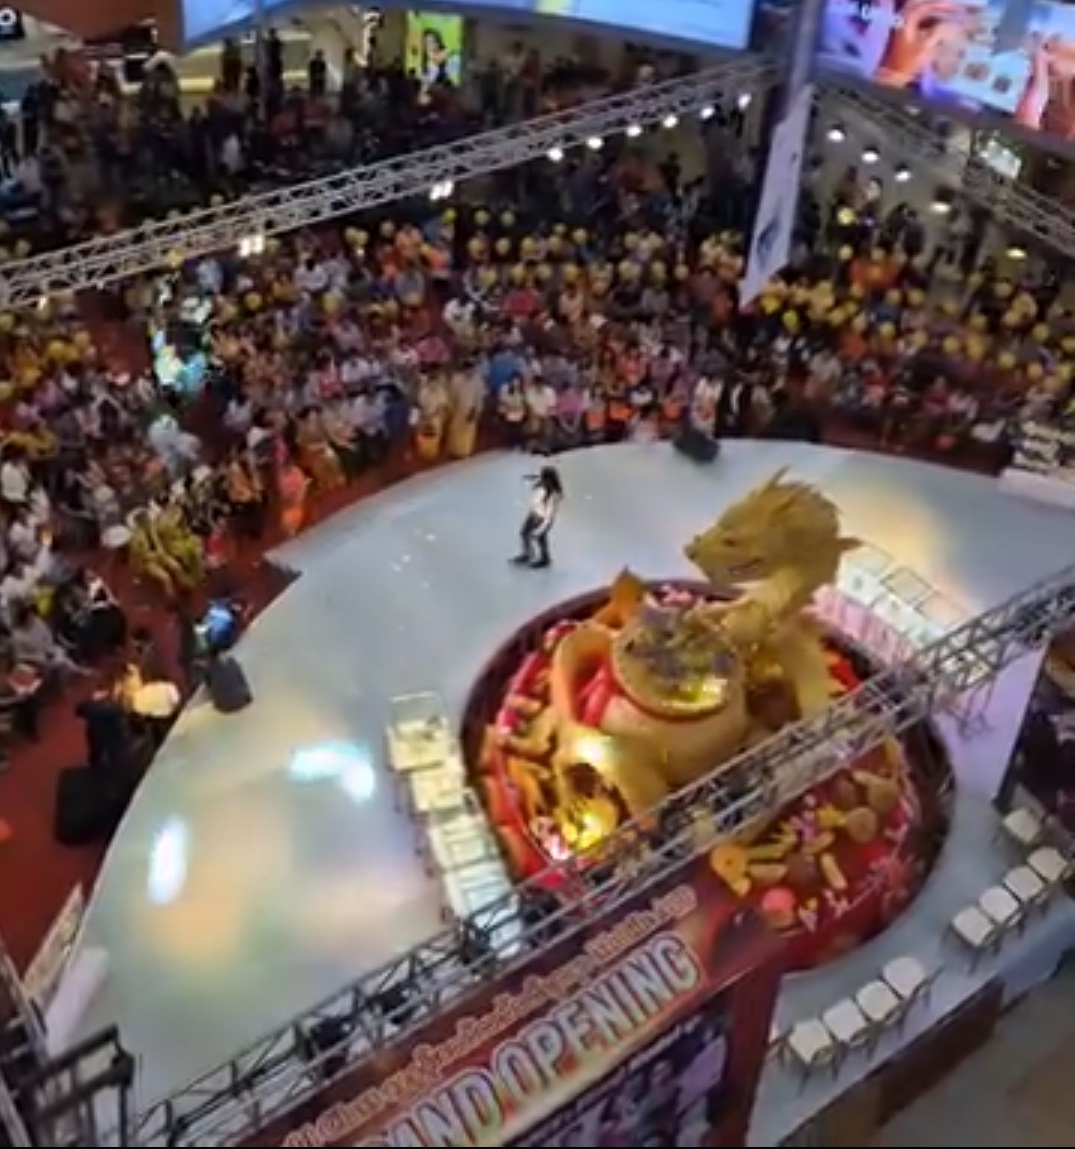 < 음력설을 맞이해 미얀마의 유명 쇼핑몰(미얀마 플라자)에서 진행한 행사 - 출처: 통신원 촬영 >